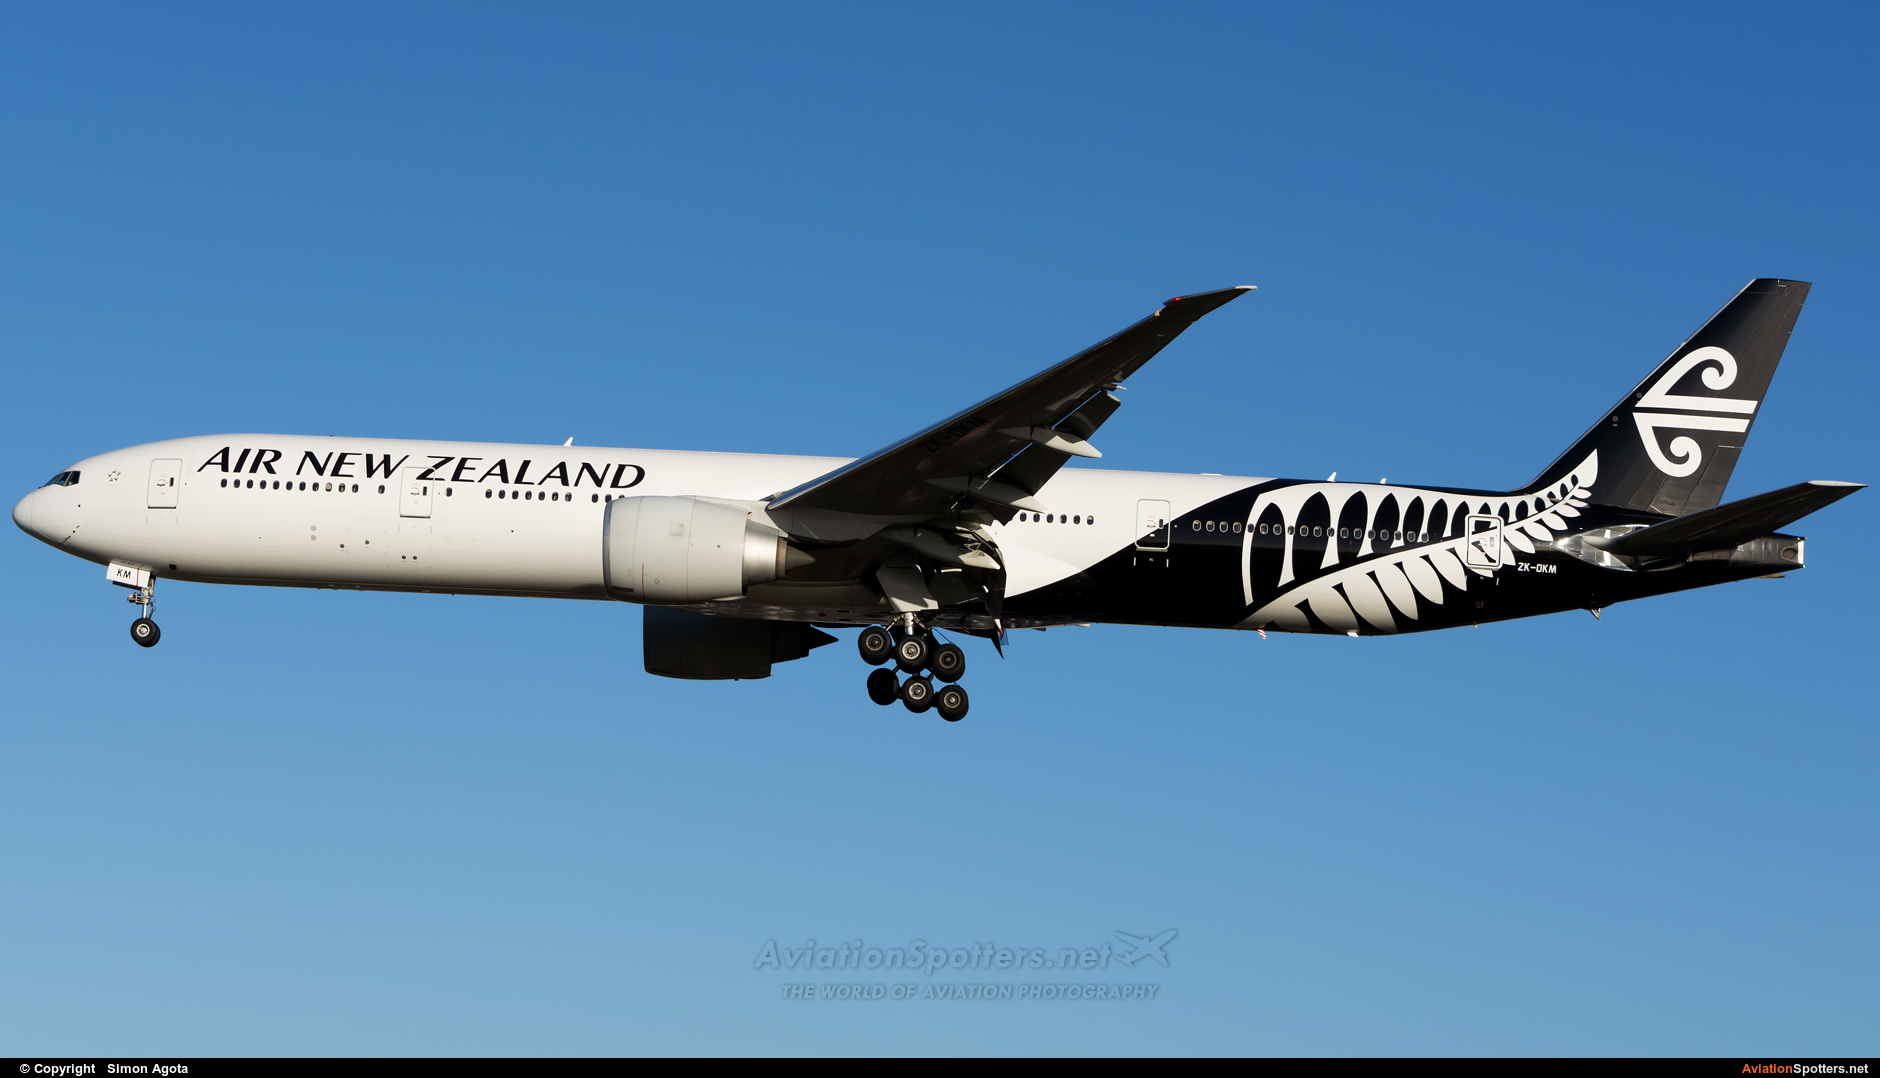 Air New Zealand  -  777-300ER  (ZK-OKM) By Simon Agota (goti80)